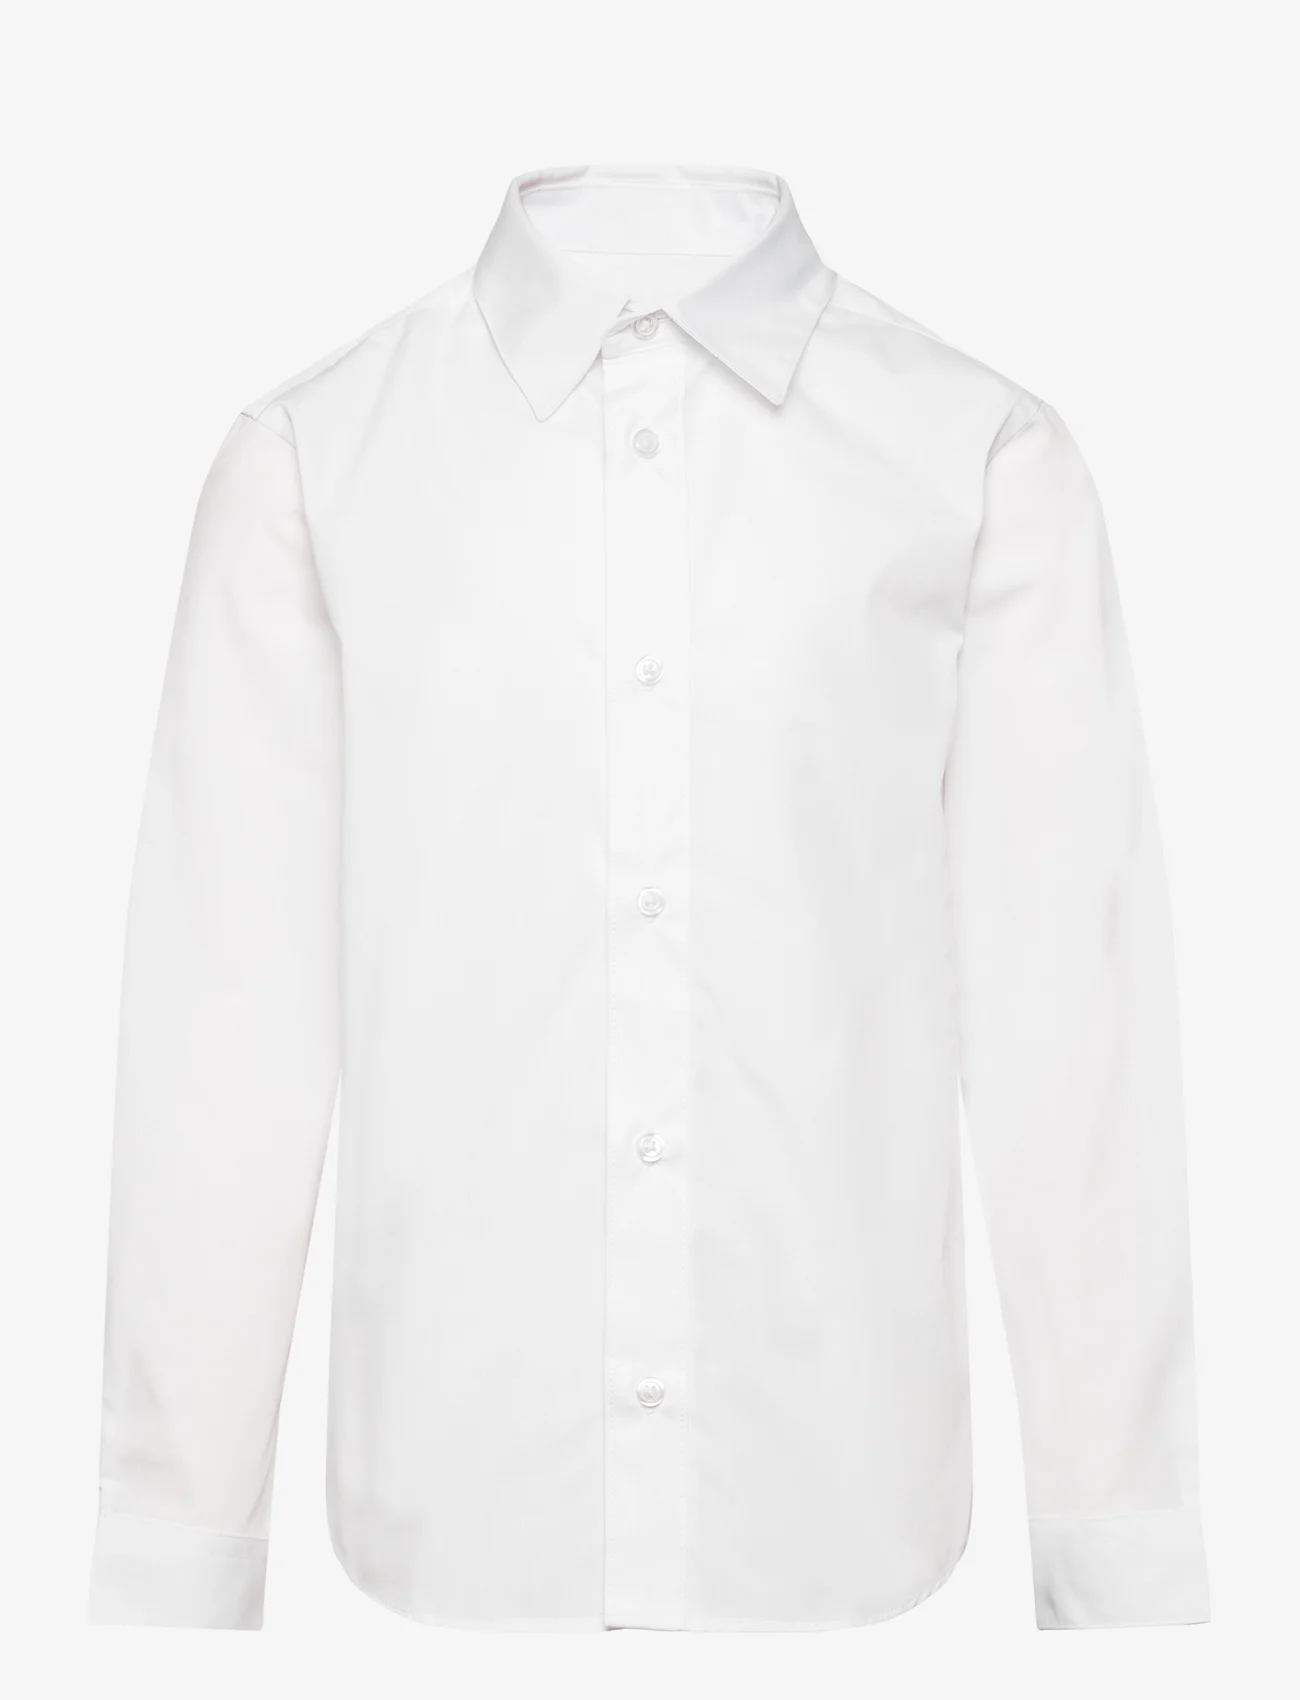 Jack & Jones - JJJOE SHIRT LS TC SN MNI - long-sleeved shirts - white - 0